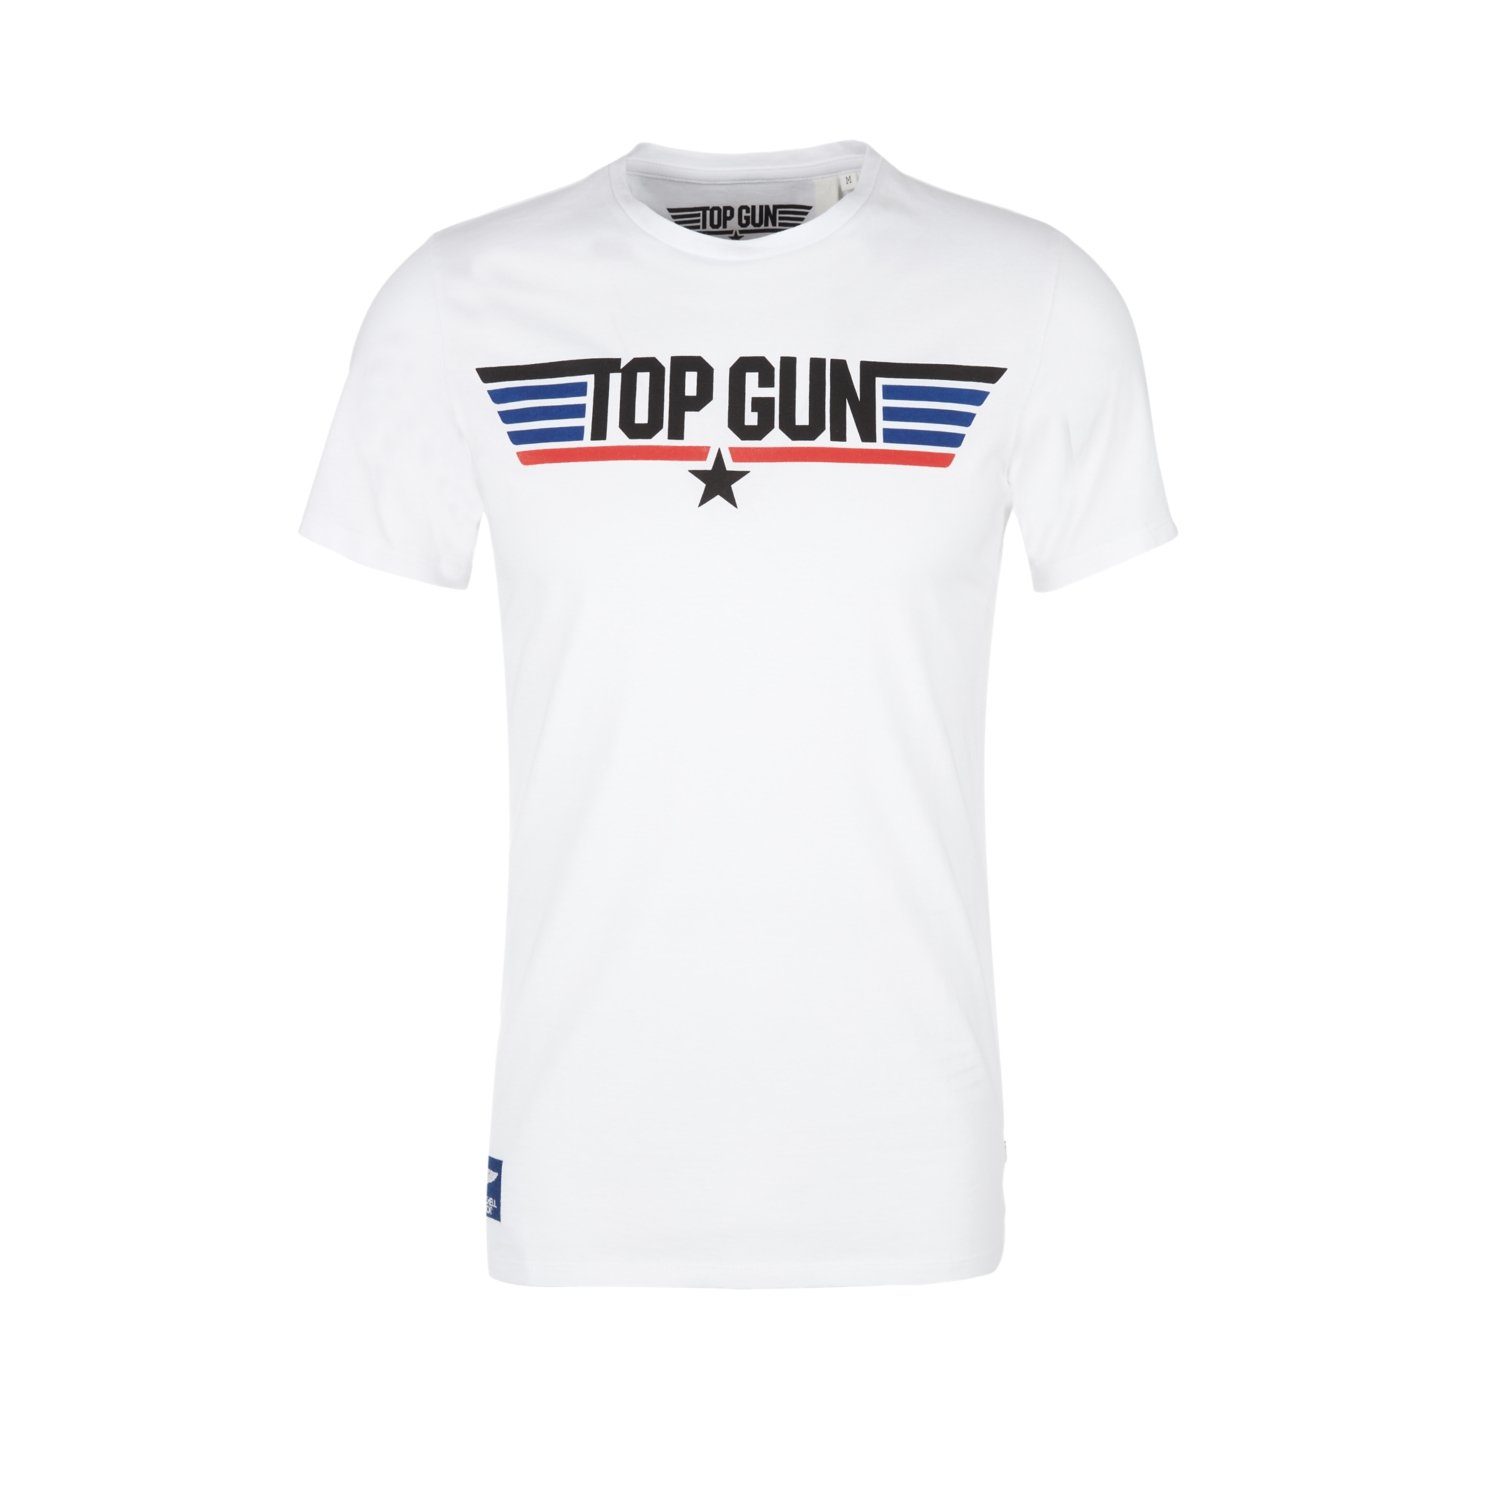 s.Oliver T-Shirt (1-tlg) mit Top Gun Print, Maverick, Slim Fit, kurzarm